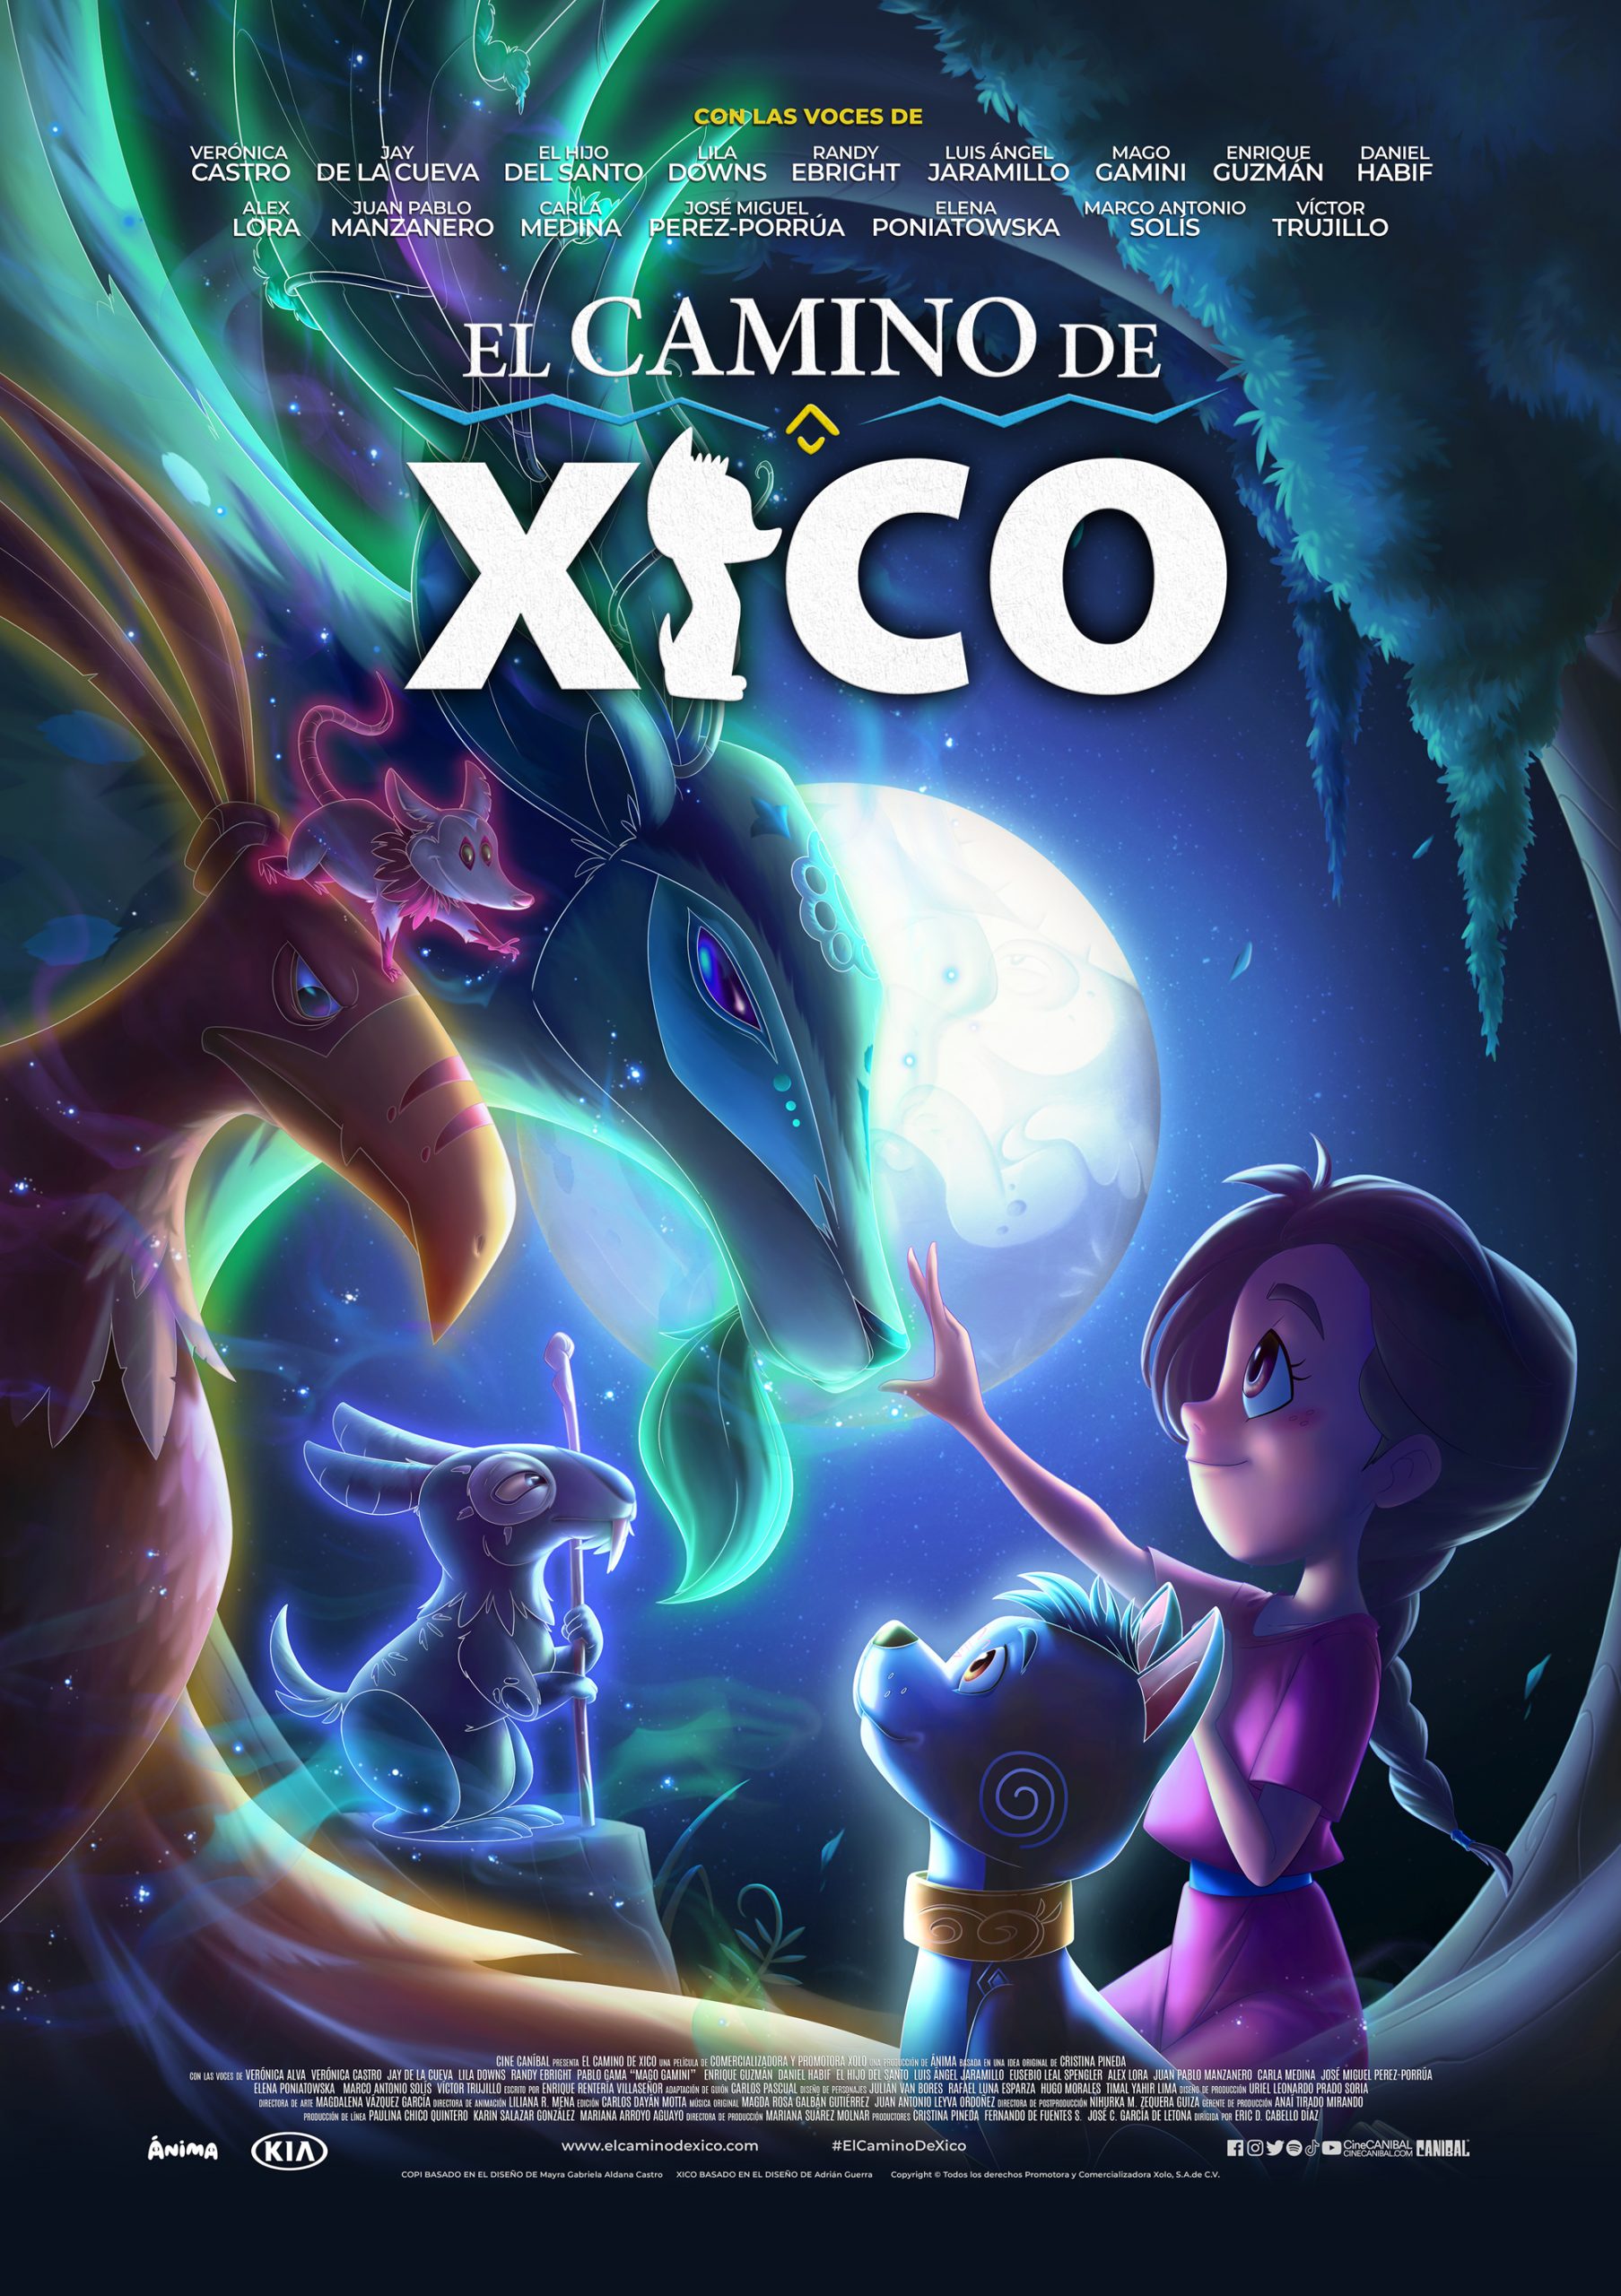 Xico’s Journey (2020) ฮีโกผจญภัย